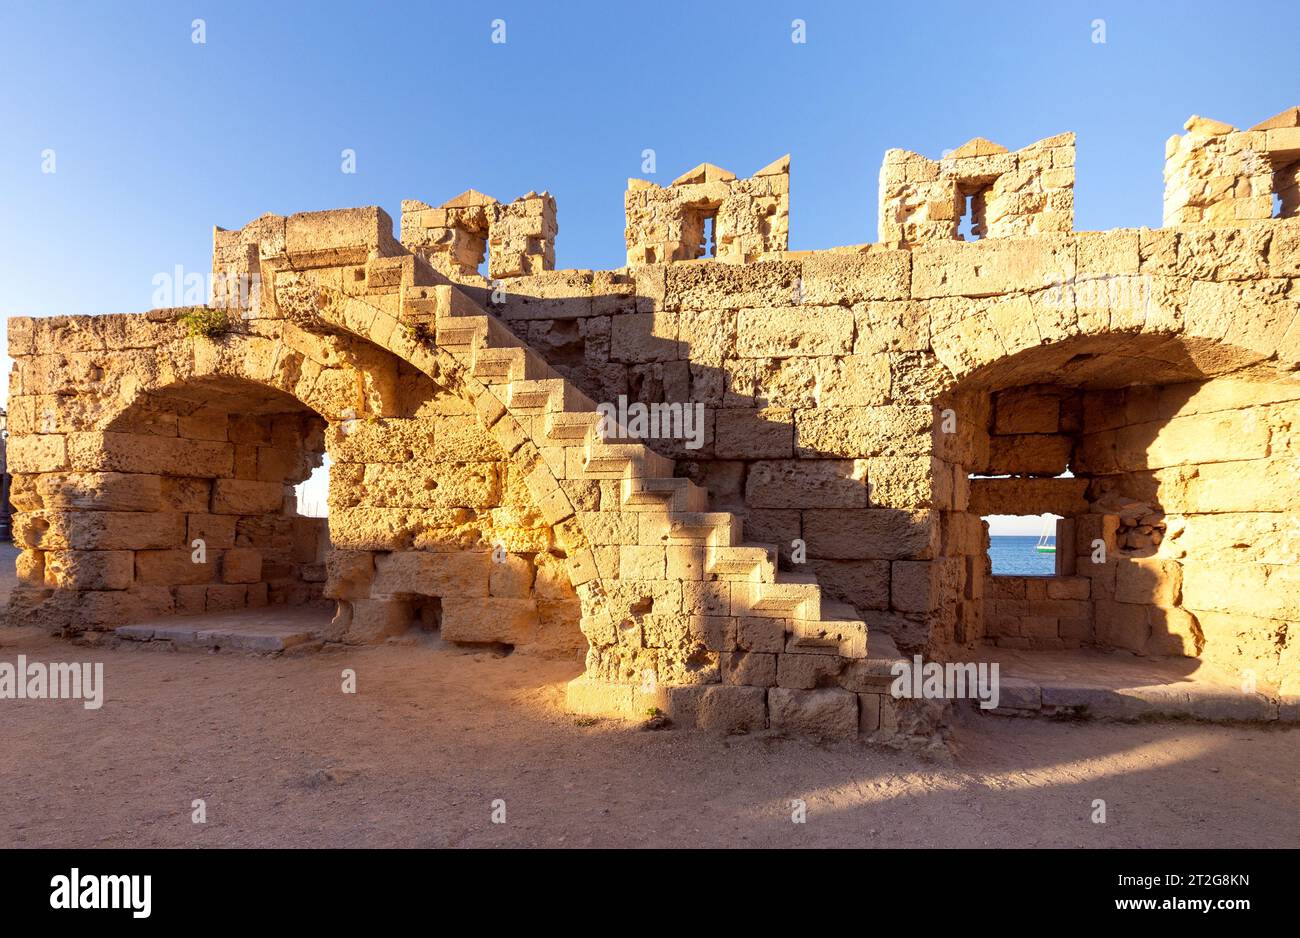 Vista delle scale sulle mura della vecchia fortezza in pietra sull'isola di Rodi. Grecia. Foto Stock